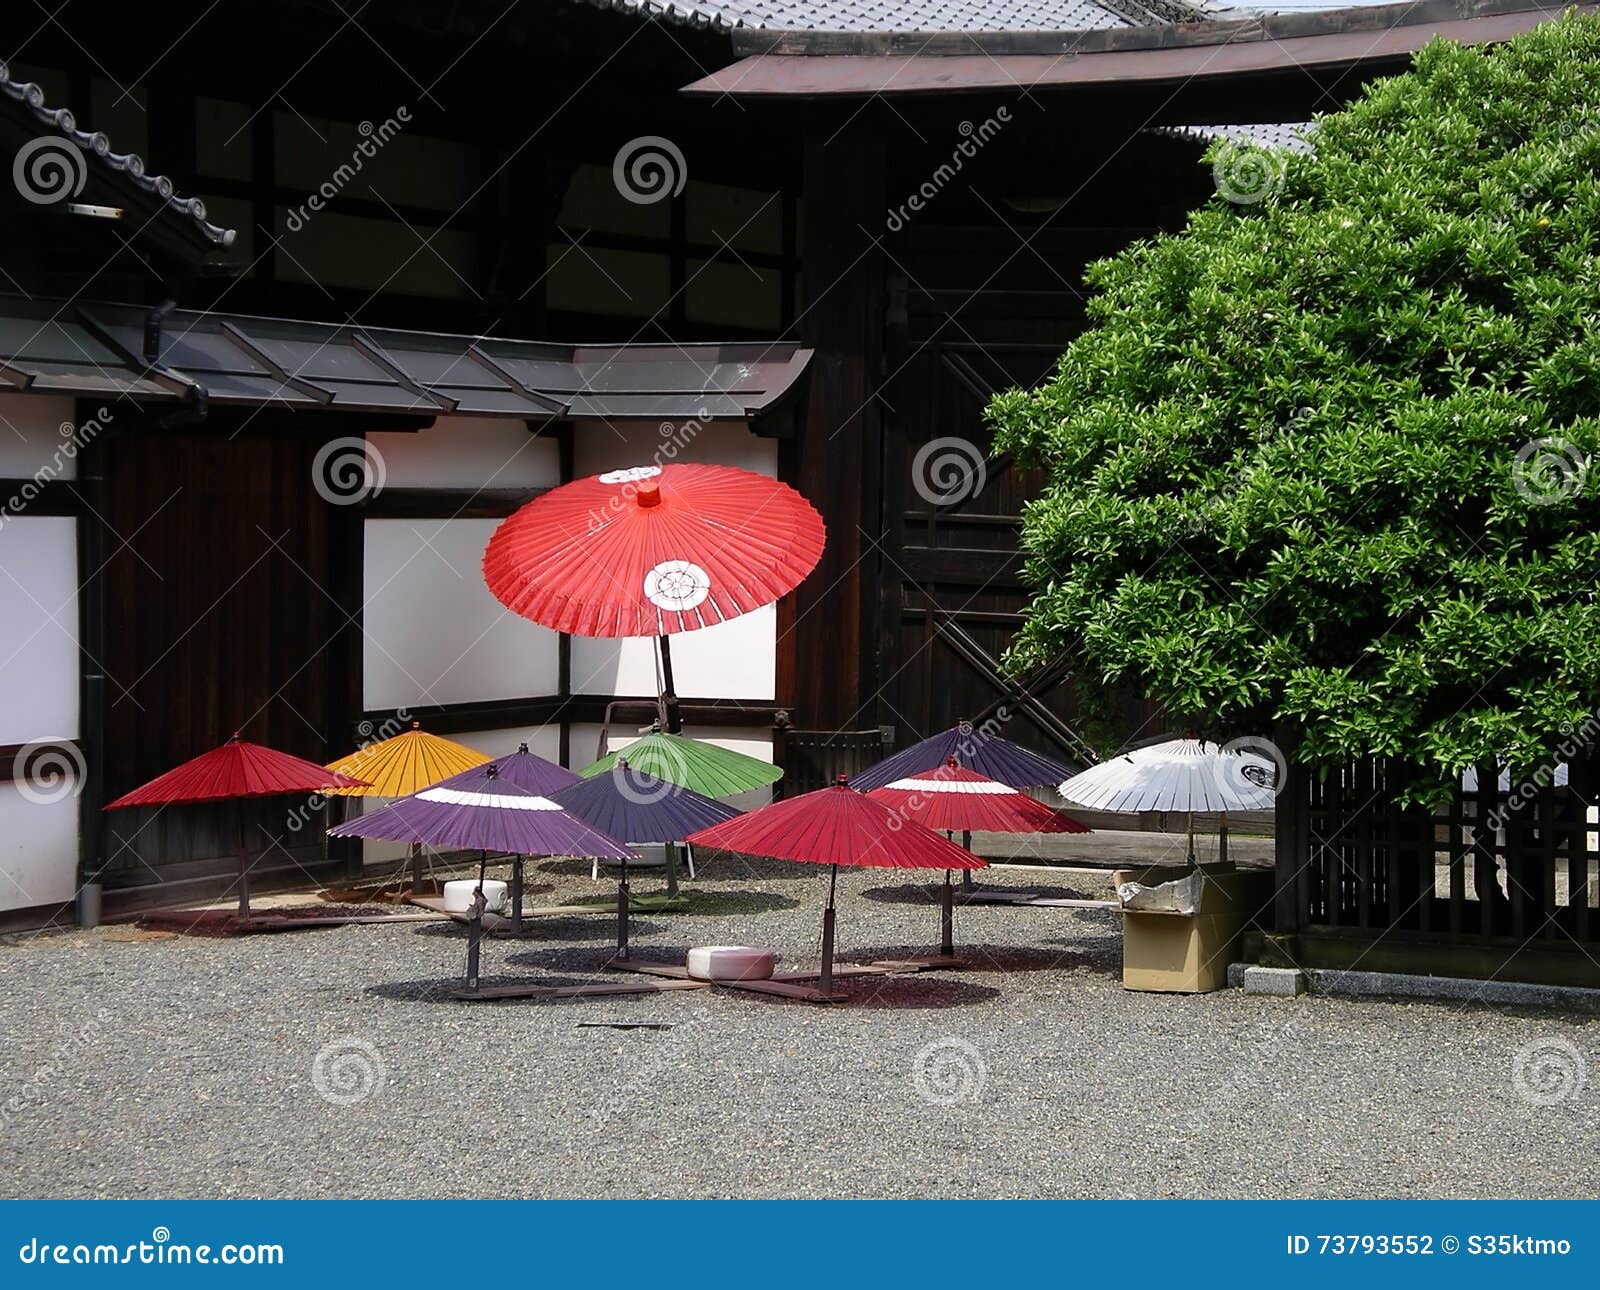 airing japanese parasols, kyoto japan.